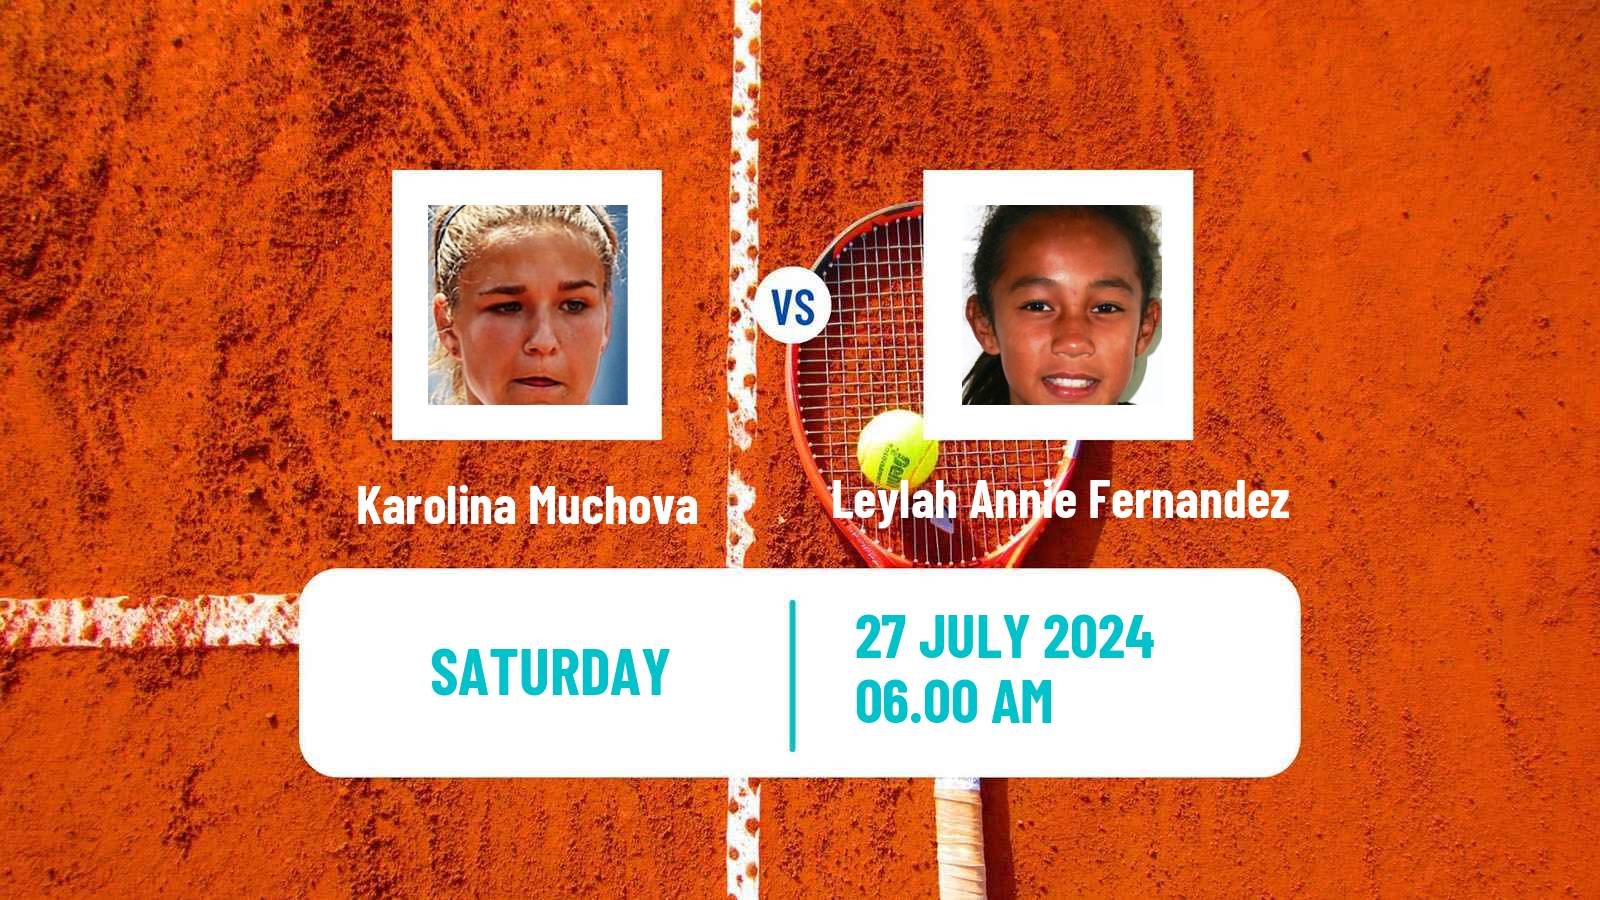 Tennis WTA Olympic Games Karolina Muchova - Leylah Annie Fernandez